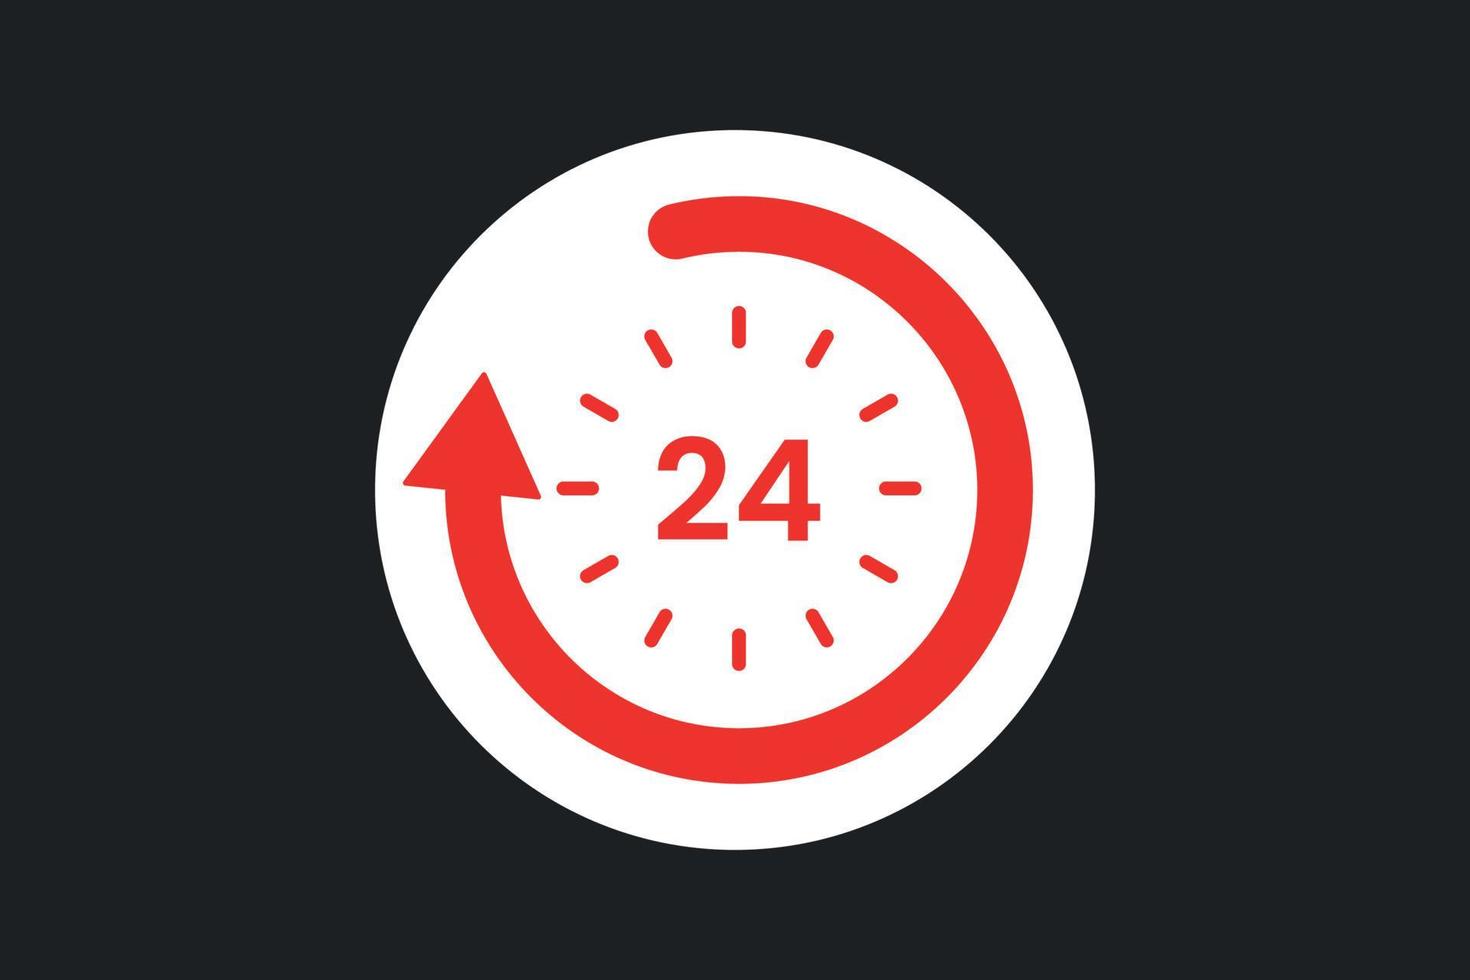 relógio de suporte 24 horas com ícone de seta vetor